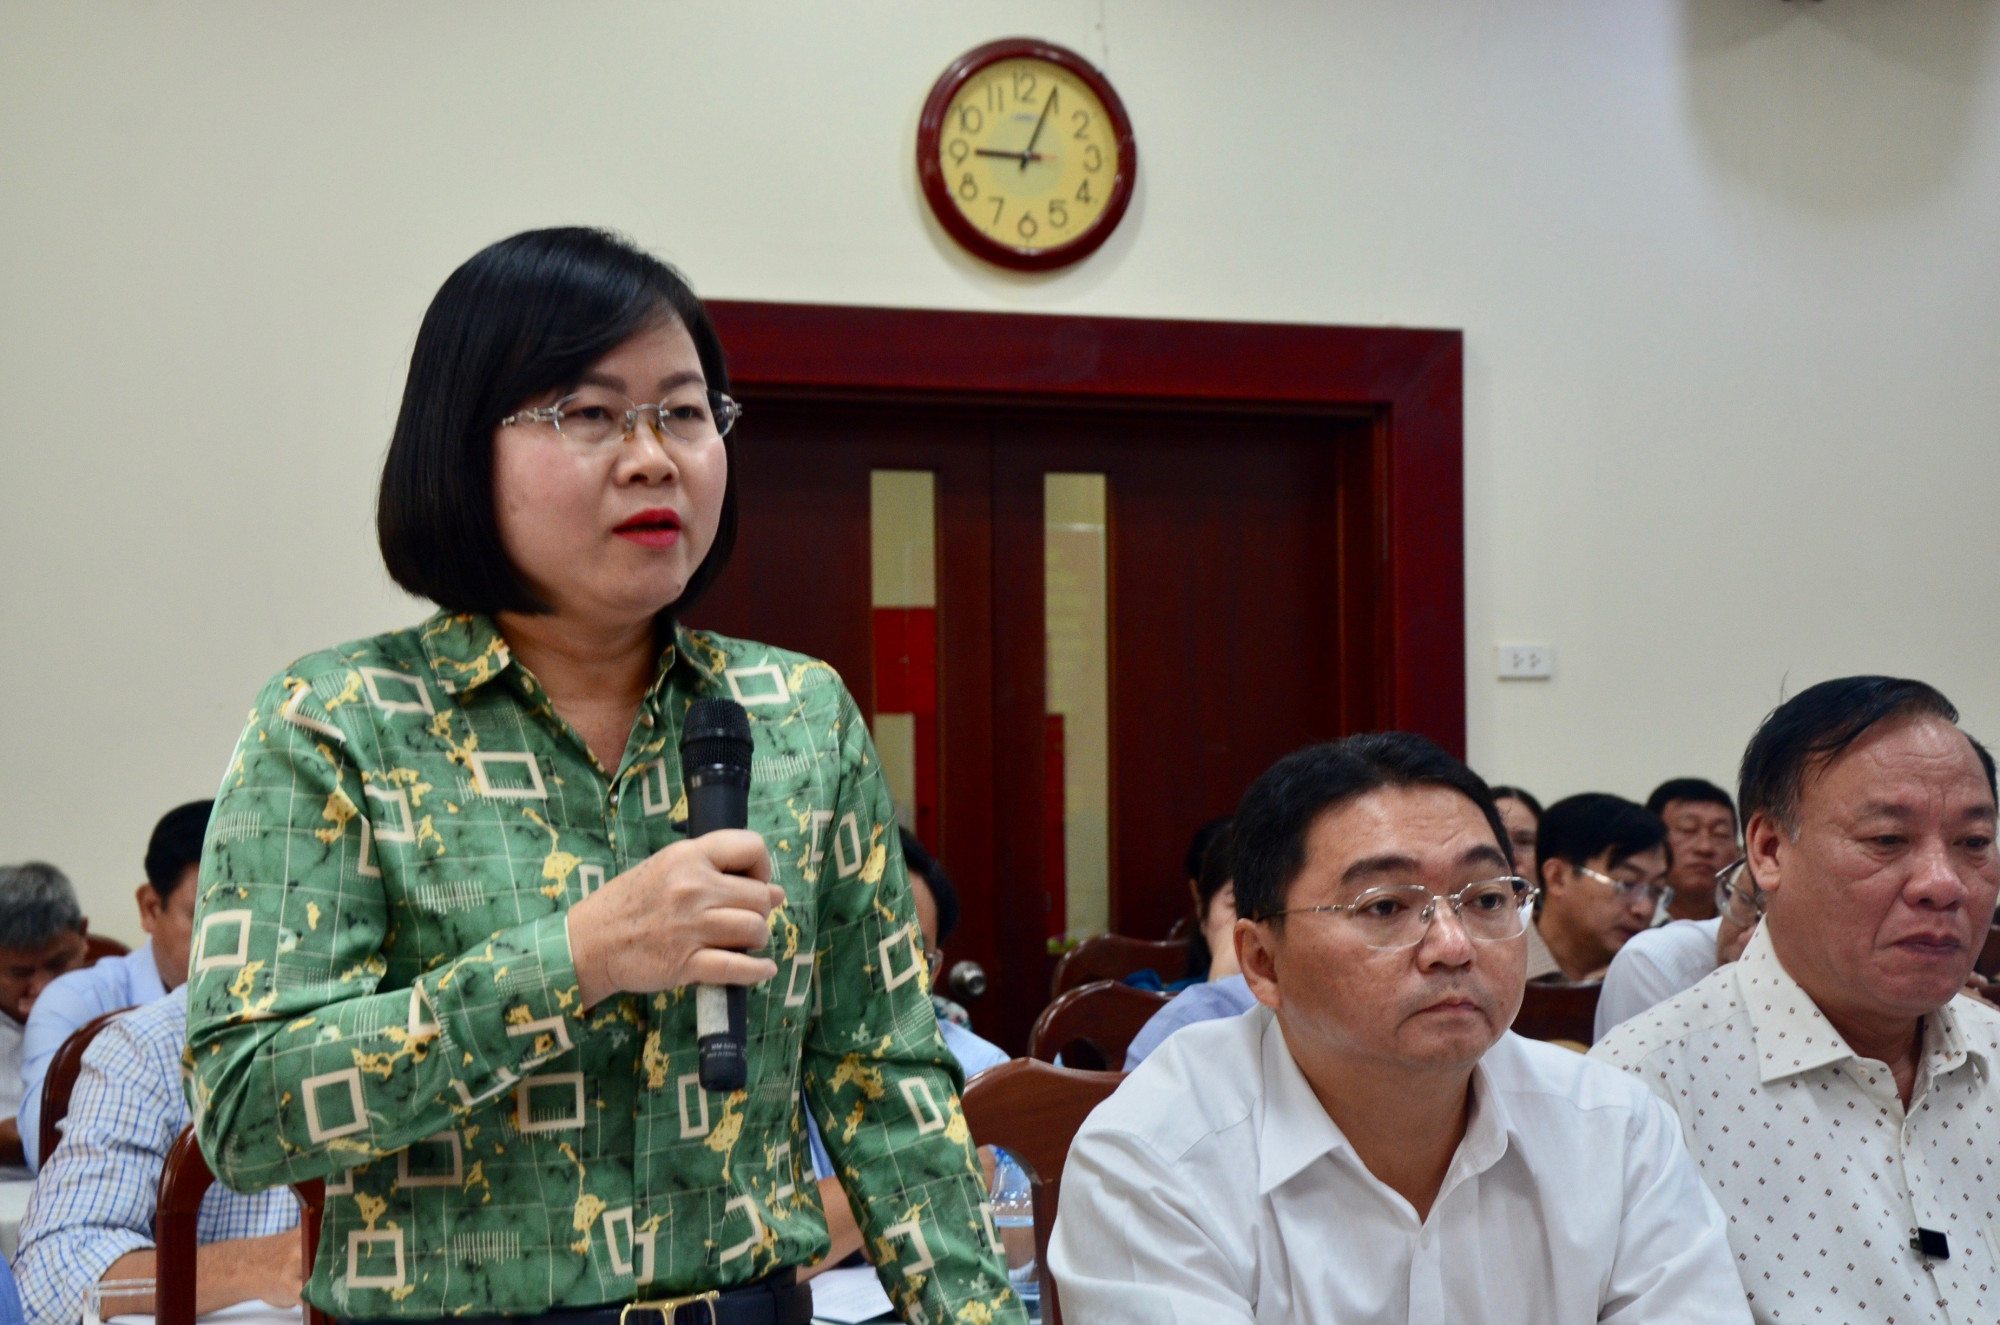 Bà Võ Thị Chính- Phó Chủ tịch UBND quận 12 cho biết, địa phương có 14 khu đất bỏ hoang nhưng không thể thu hồi